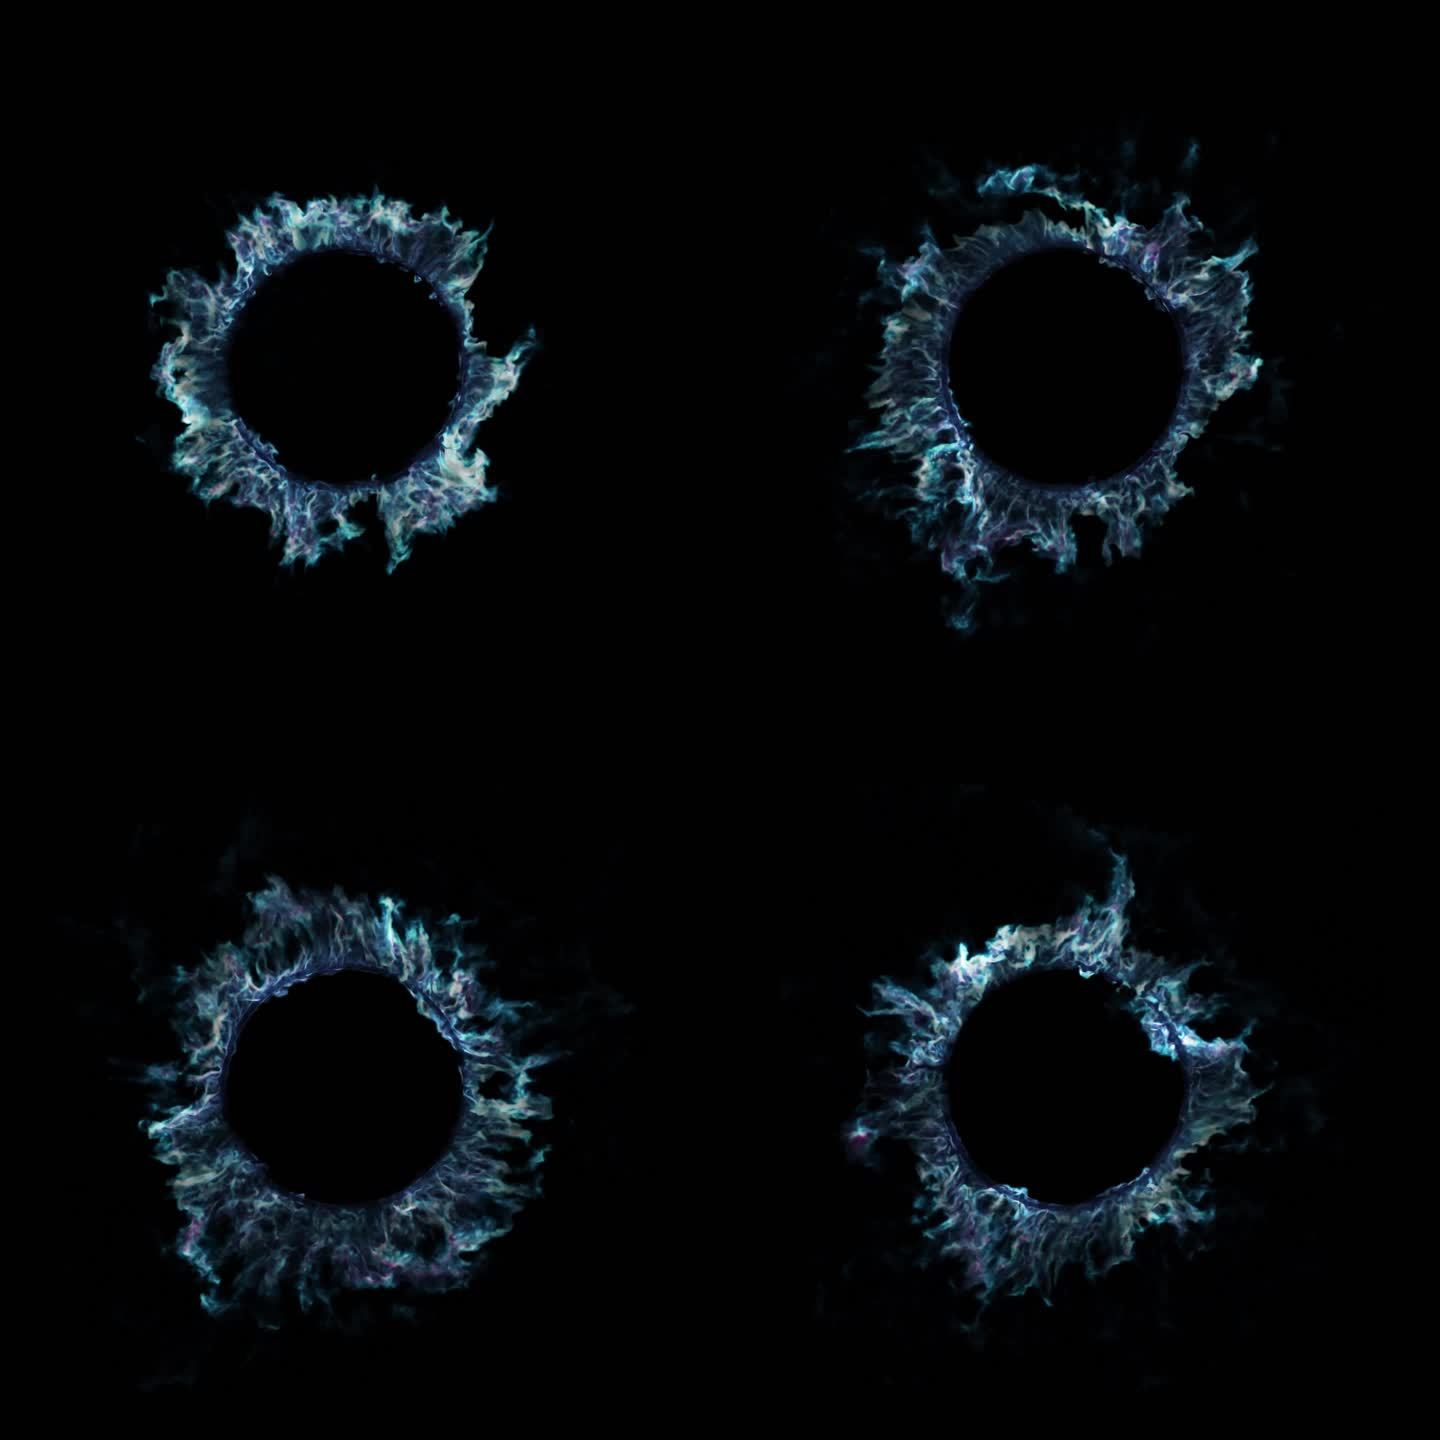 粒子烟雾嘭一下子炸开标题背景蓝色烟雾圈